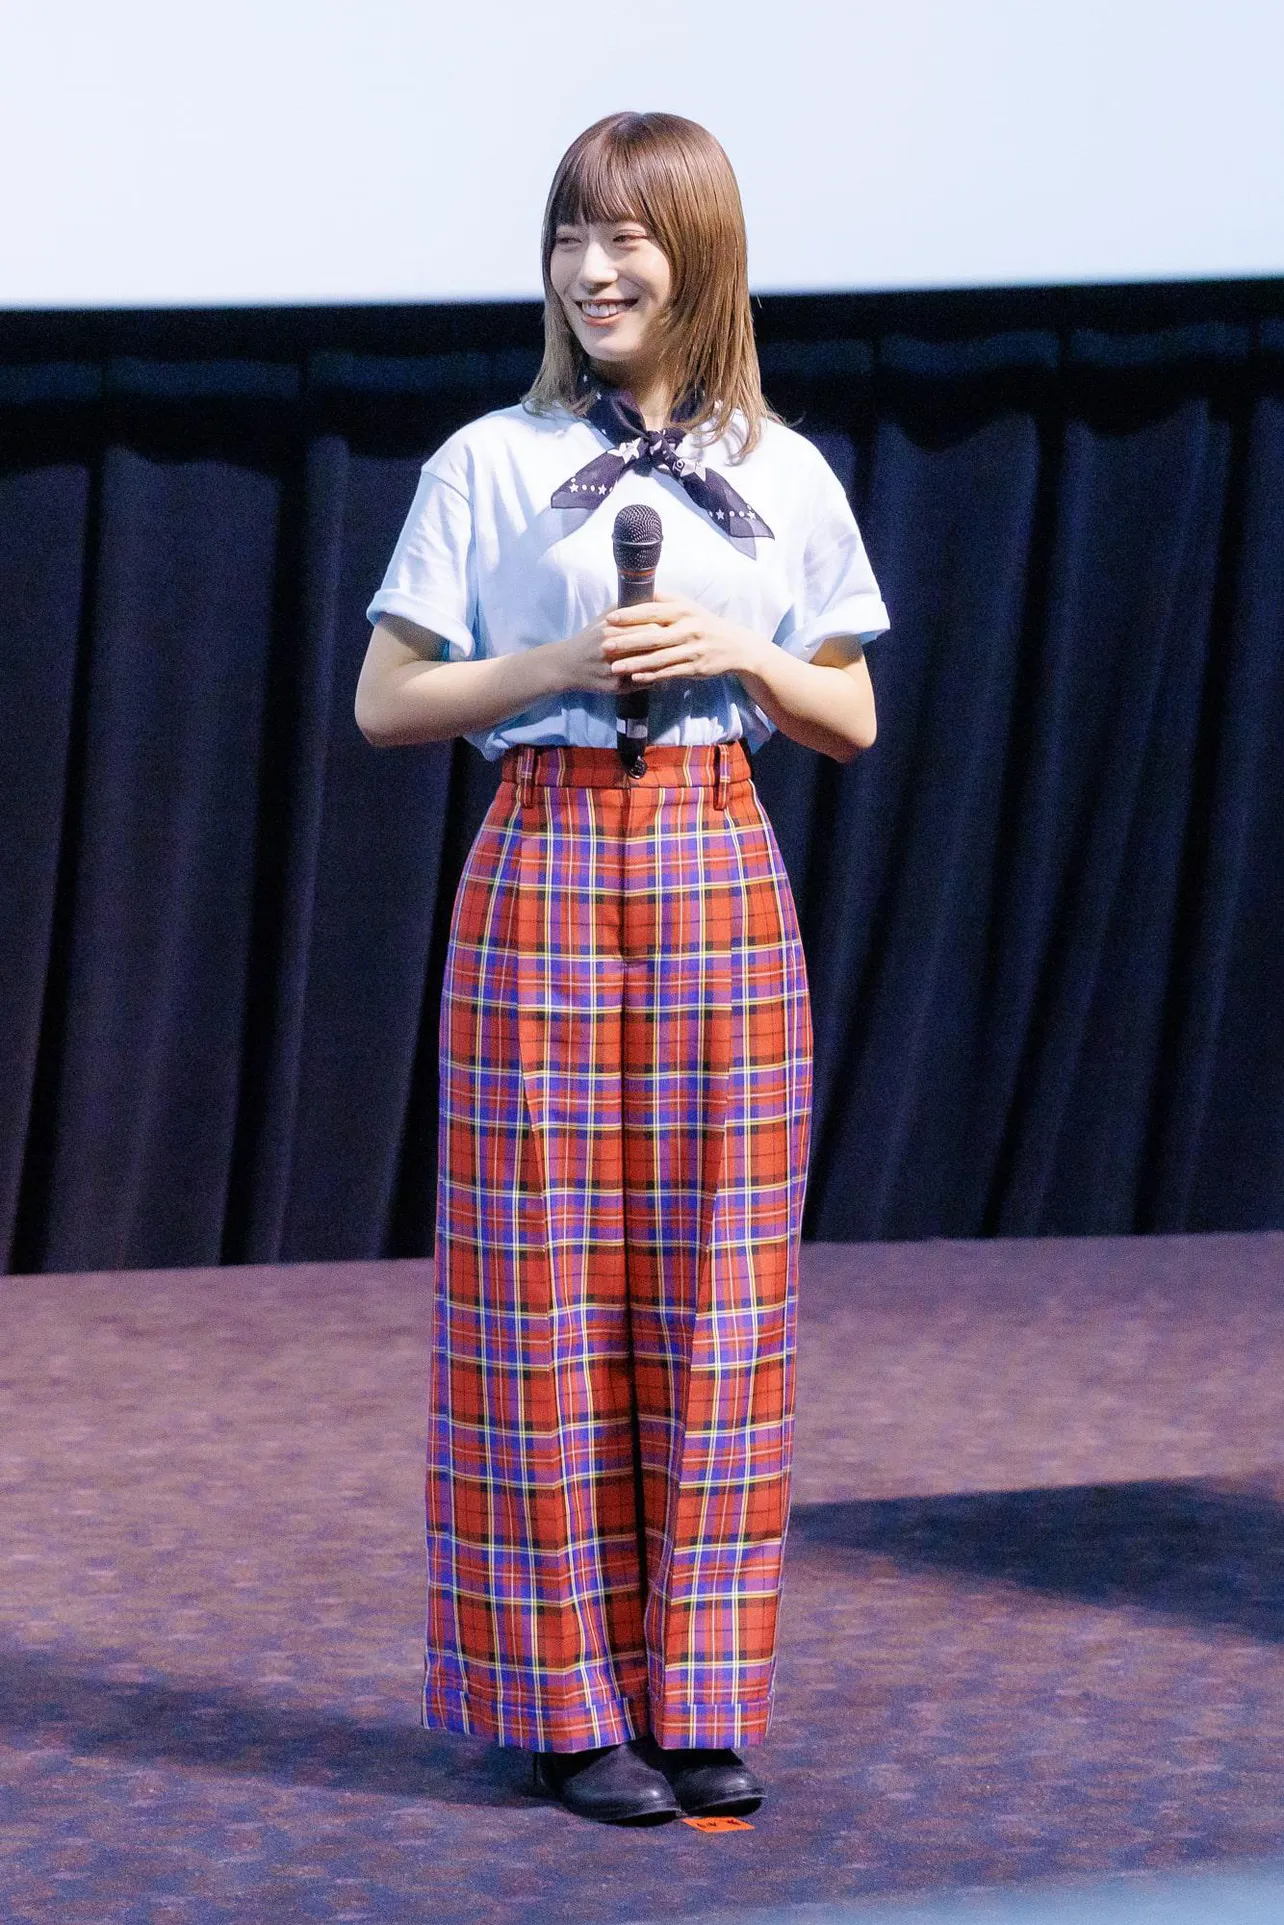 日向坂46・東村芽依、「日向坂映画祭 VOL.2」舞台あいさつで4期生の姿に感動したエピソードを語る